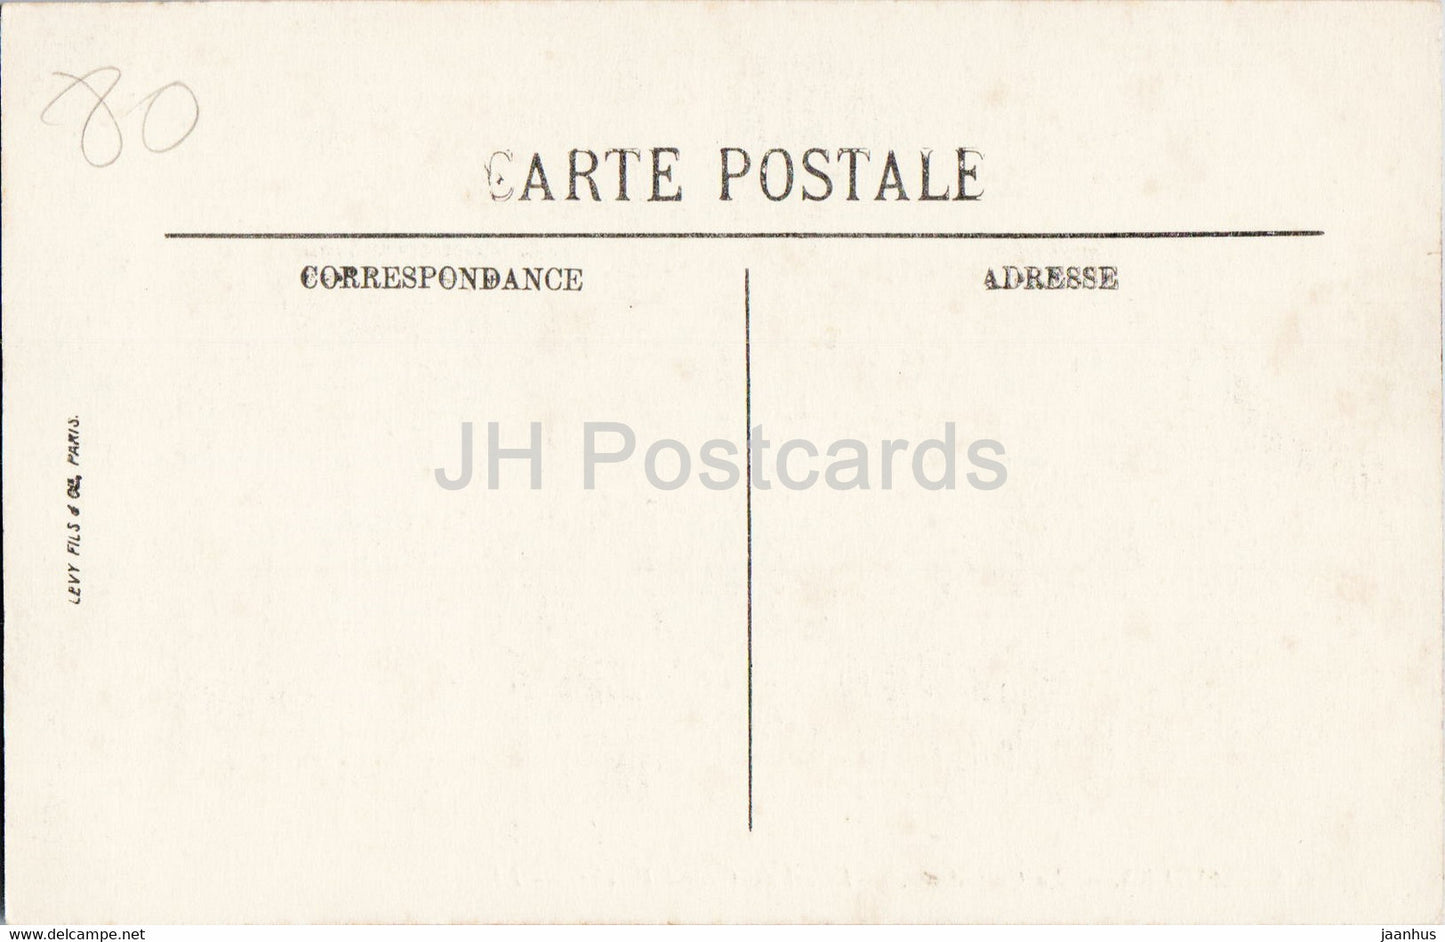 Amiens - La Cathédrale - Détail du Grand Porche - LL - cathédrale - carte postale ancienne - France - inutilisée